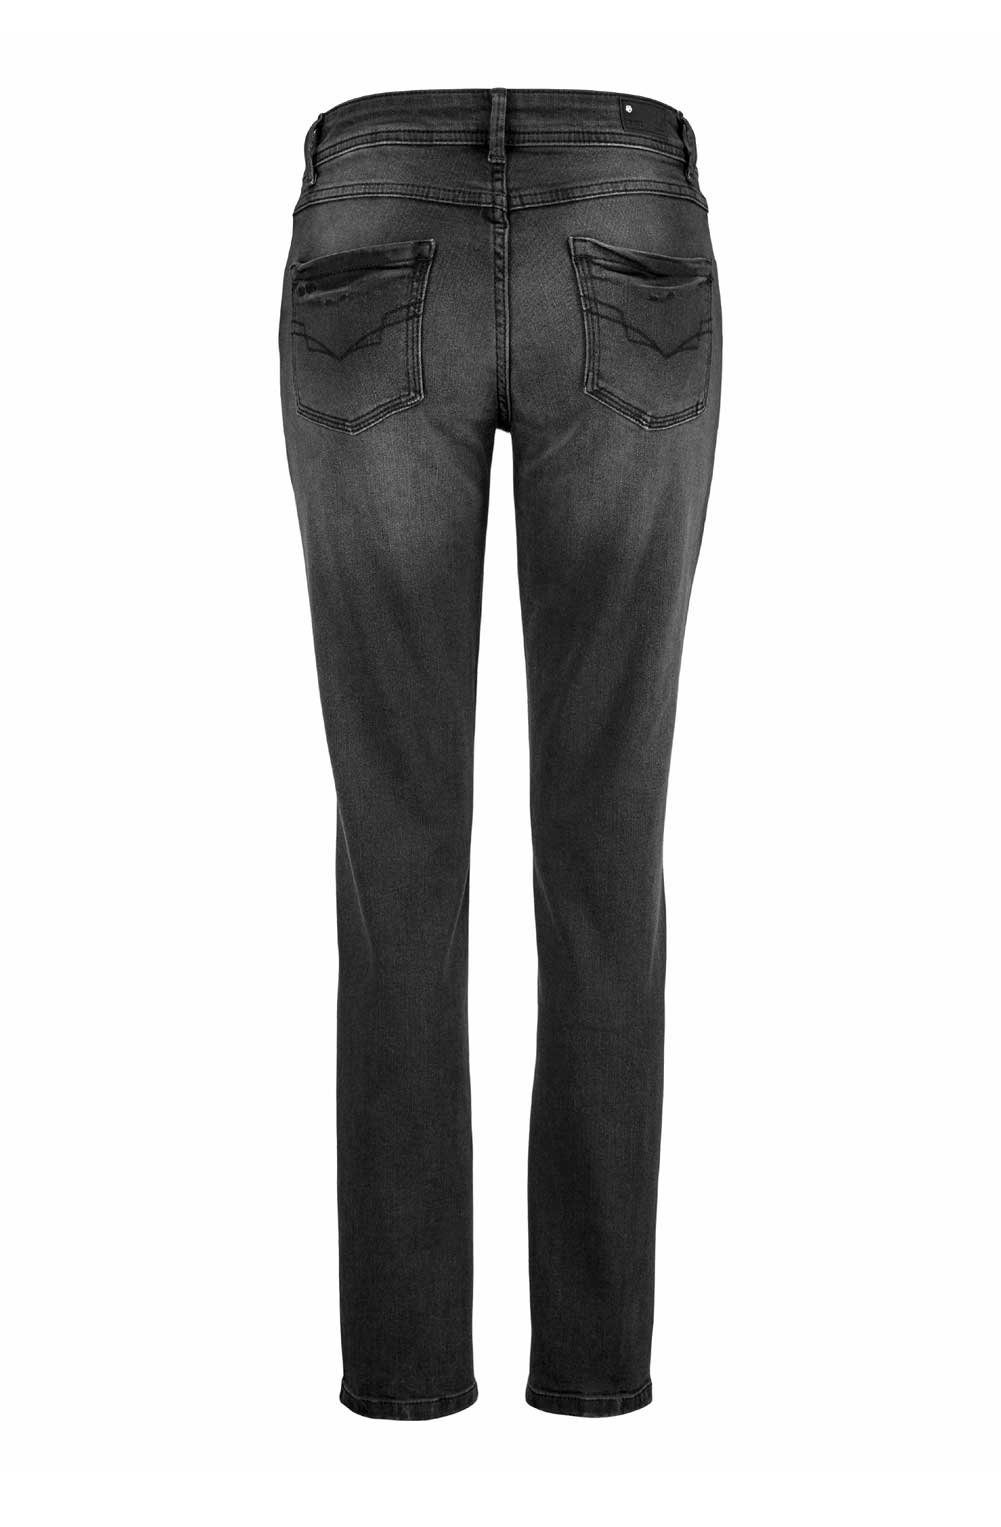 H.I.S Stretch-Jeans »H.i.s. Damen Marken-Stretch-Jeans mit Strass, schwarz-used,  33 inch« online kaufen | OTTO